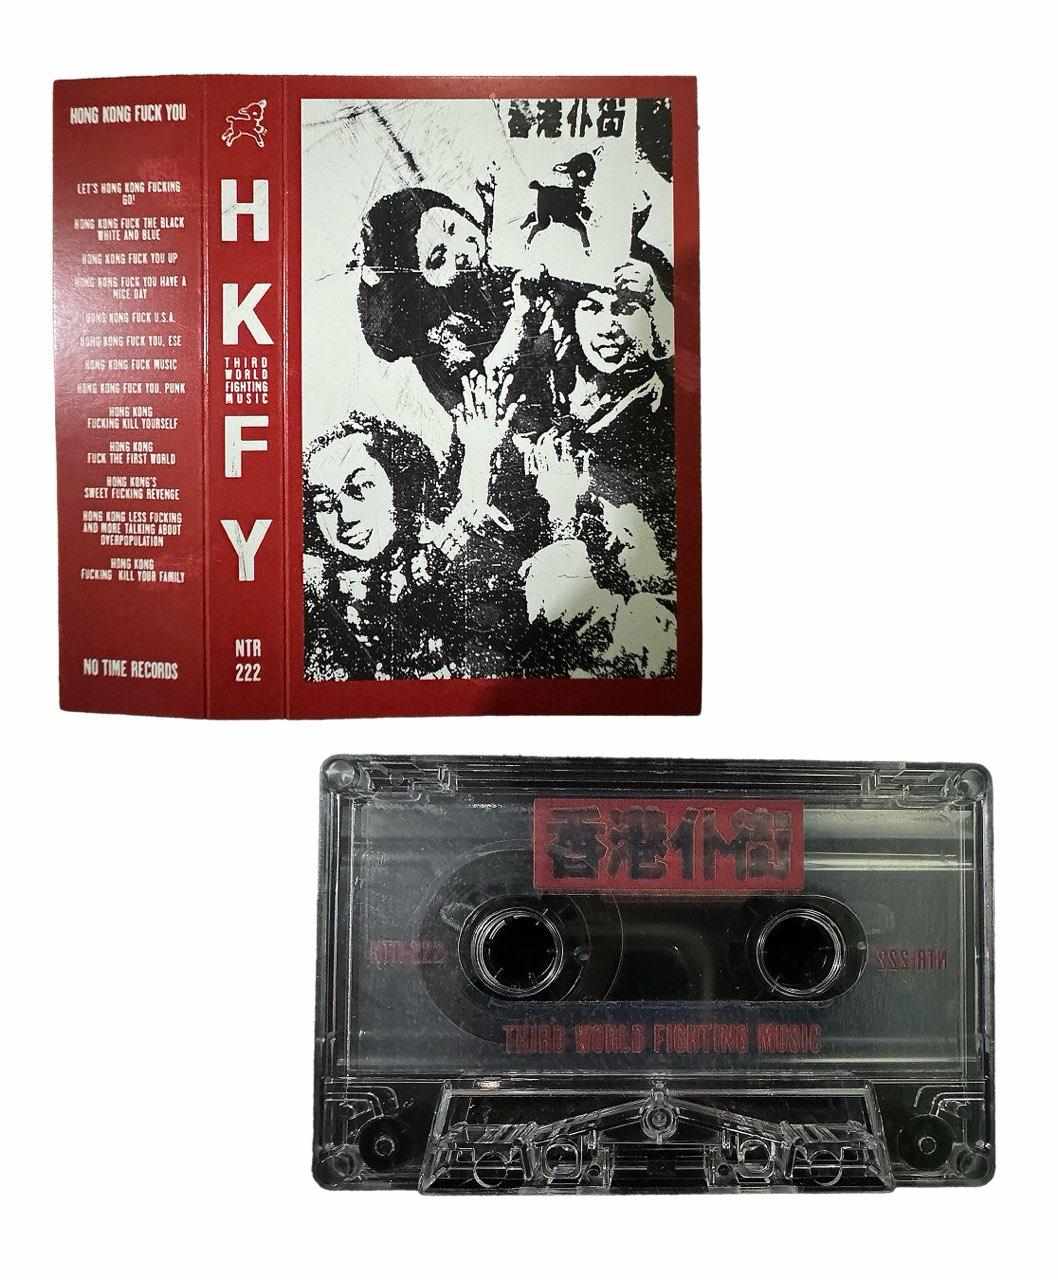 Hong Kong Fuck You - THIRD WORLD FIGHTING MUSIC Cassette